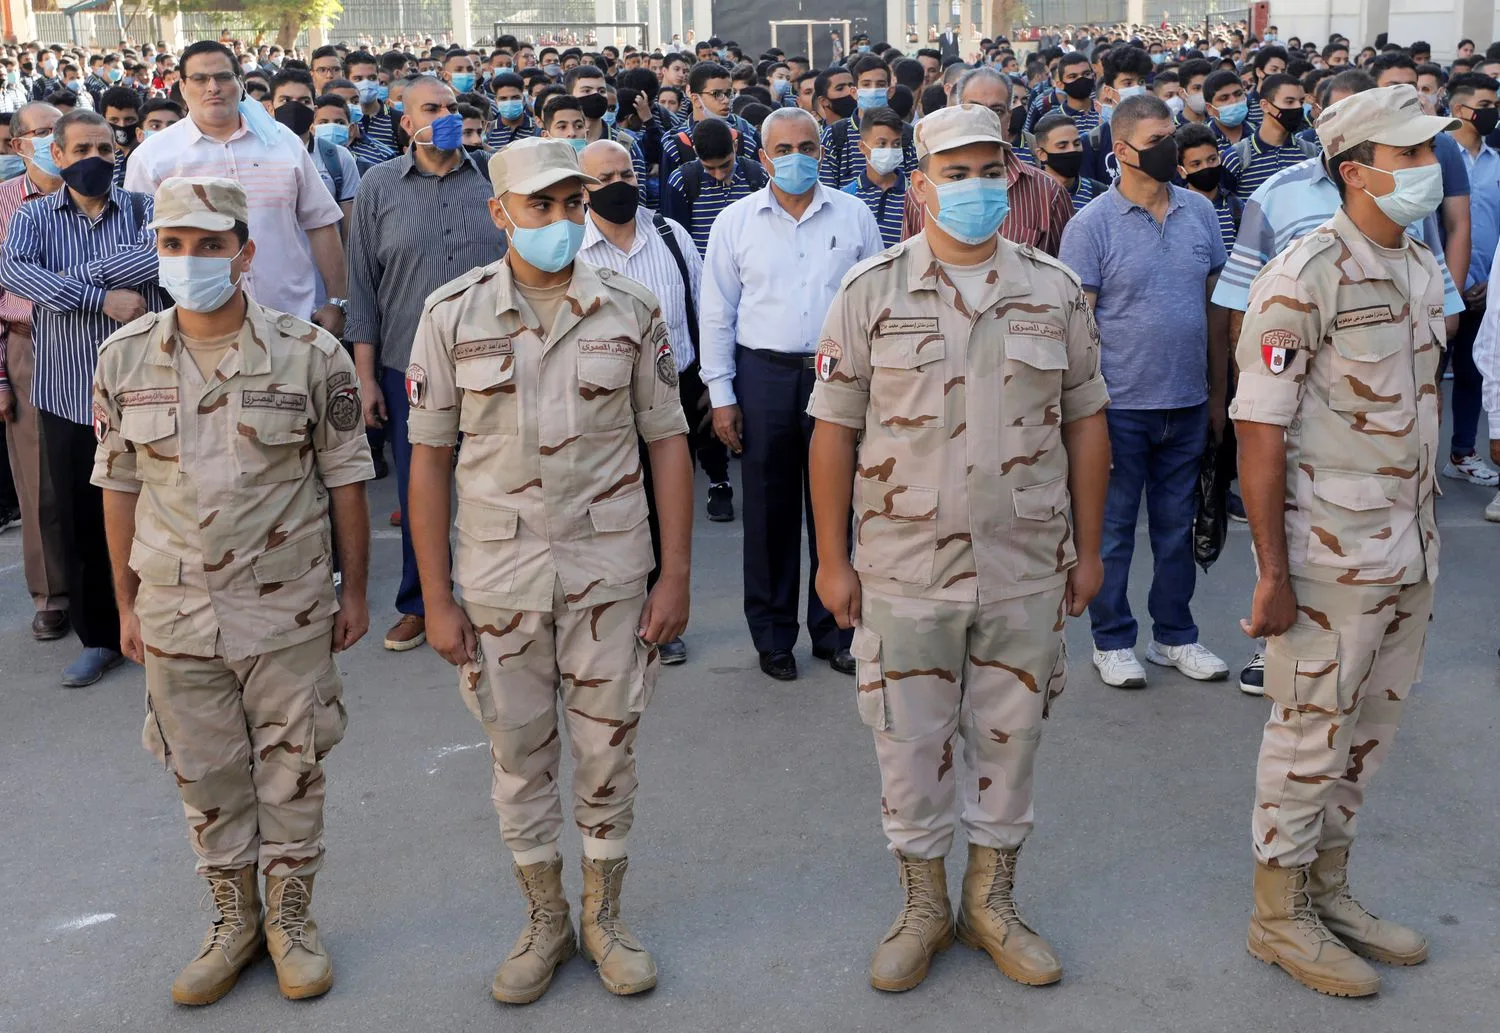 ضباط من الجيش المصري خلال اليوم الأول للعودة المدرسية بعد فترة الحجر الصحي، في مدرسة السعيدية في القاهرة في أكتوبر الماضي.